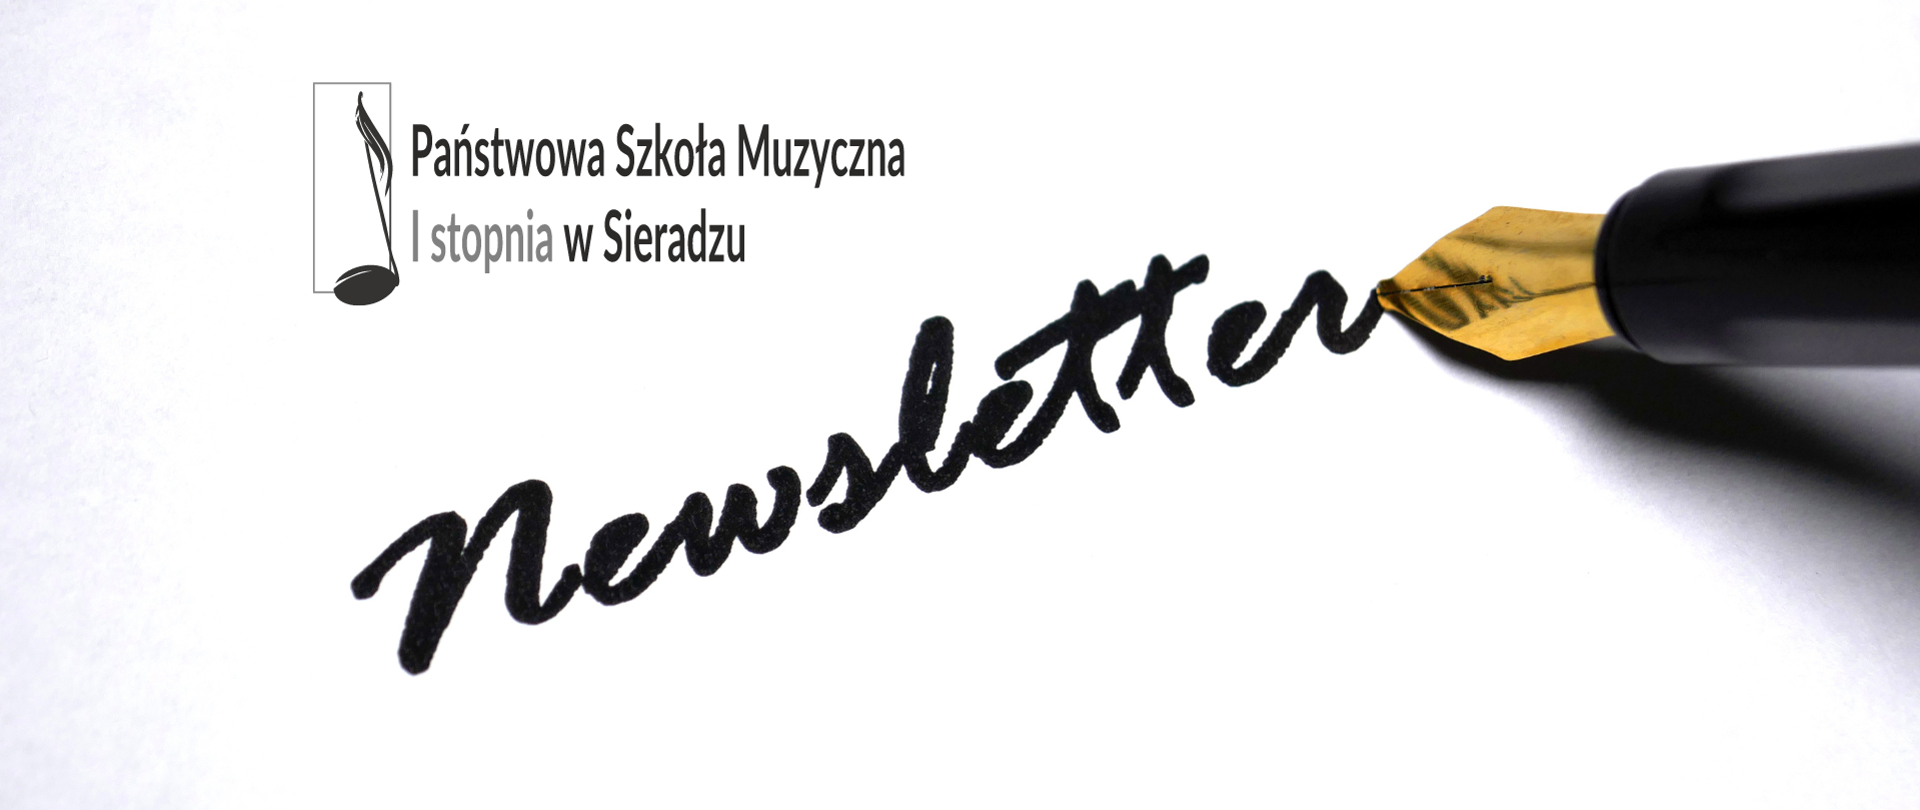 Na białym tle, w lewym, górnym rogu logo PSM w Sieradzu, po przekątnej stylizowany na ręczny napis Newsletter. Przy literze r stalówka pióra